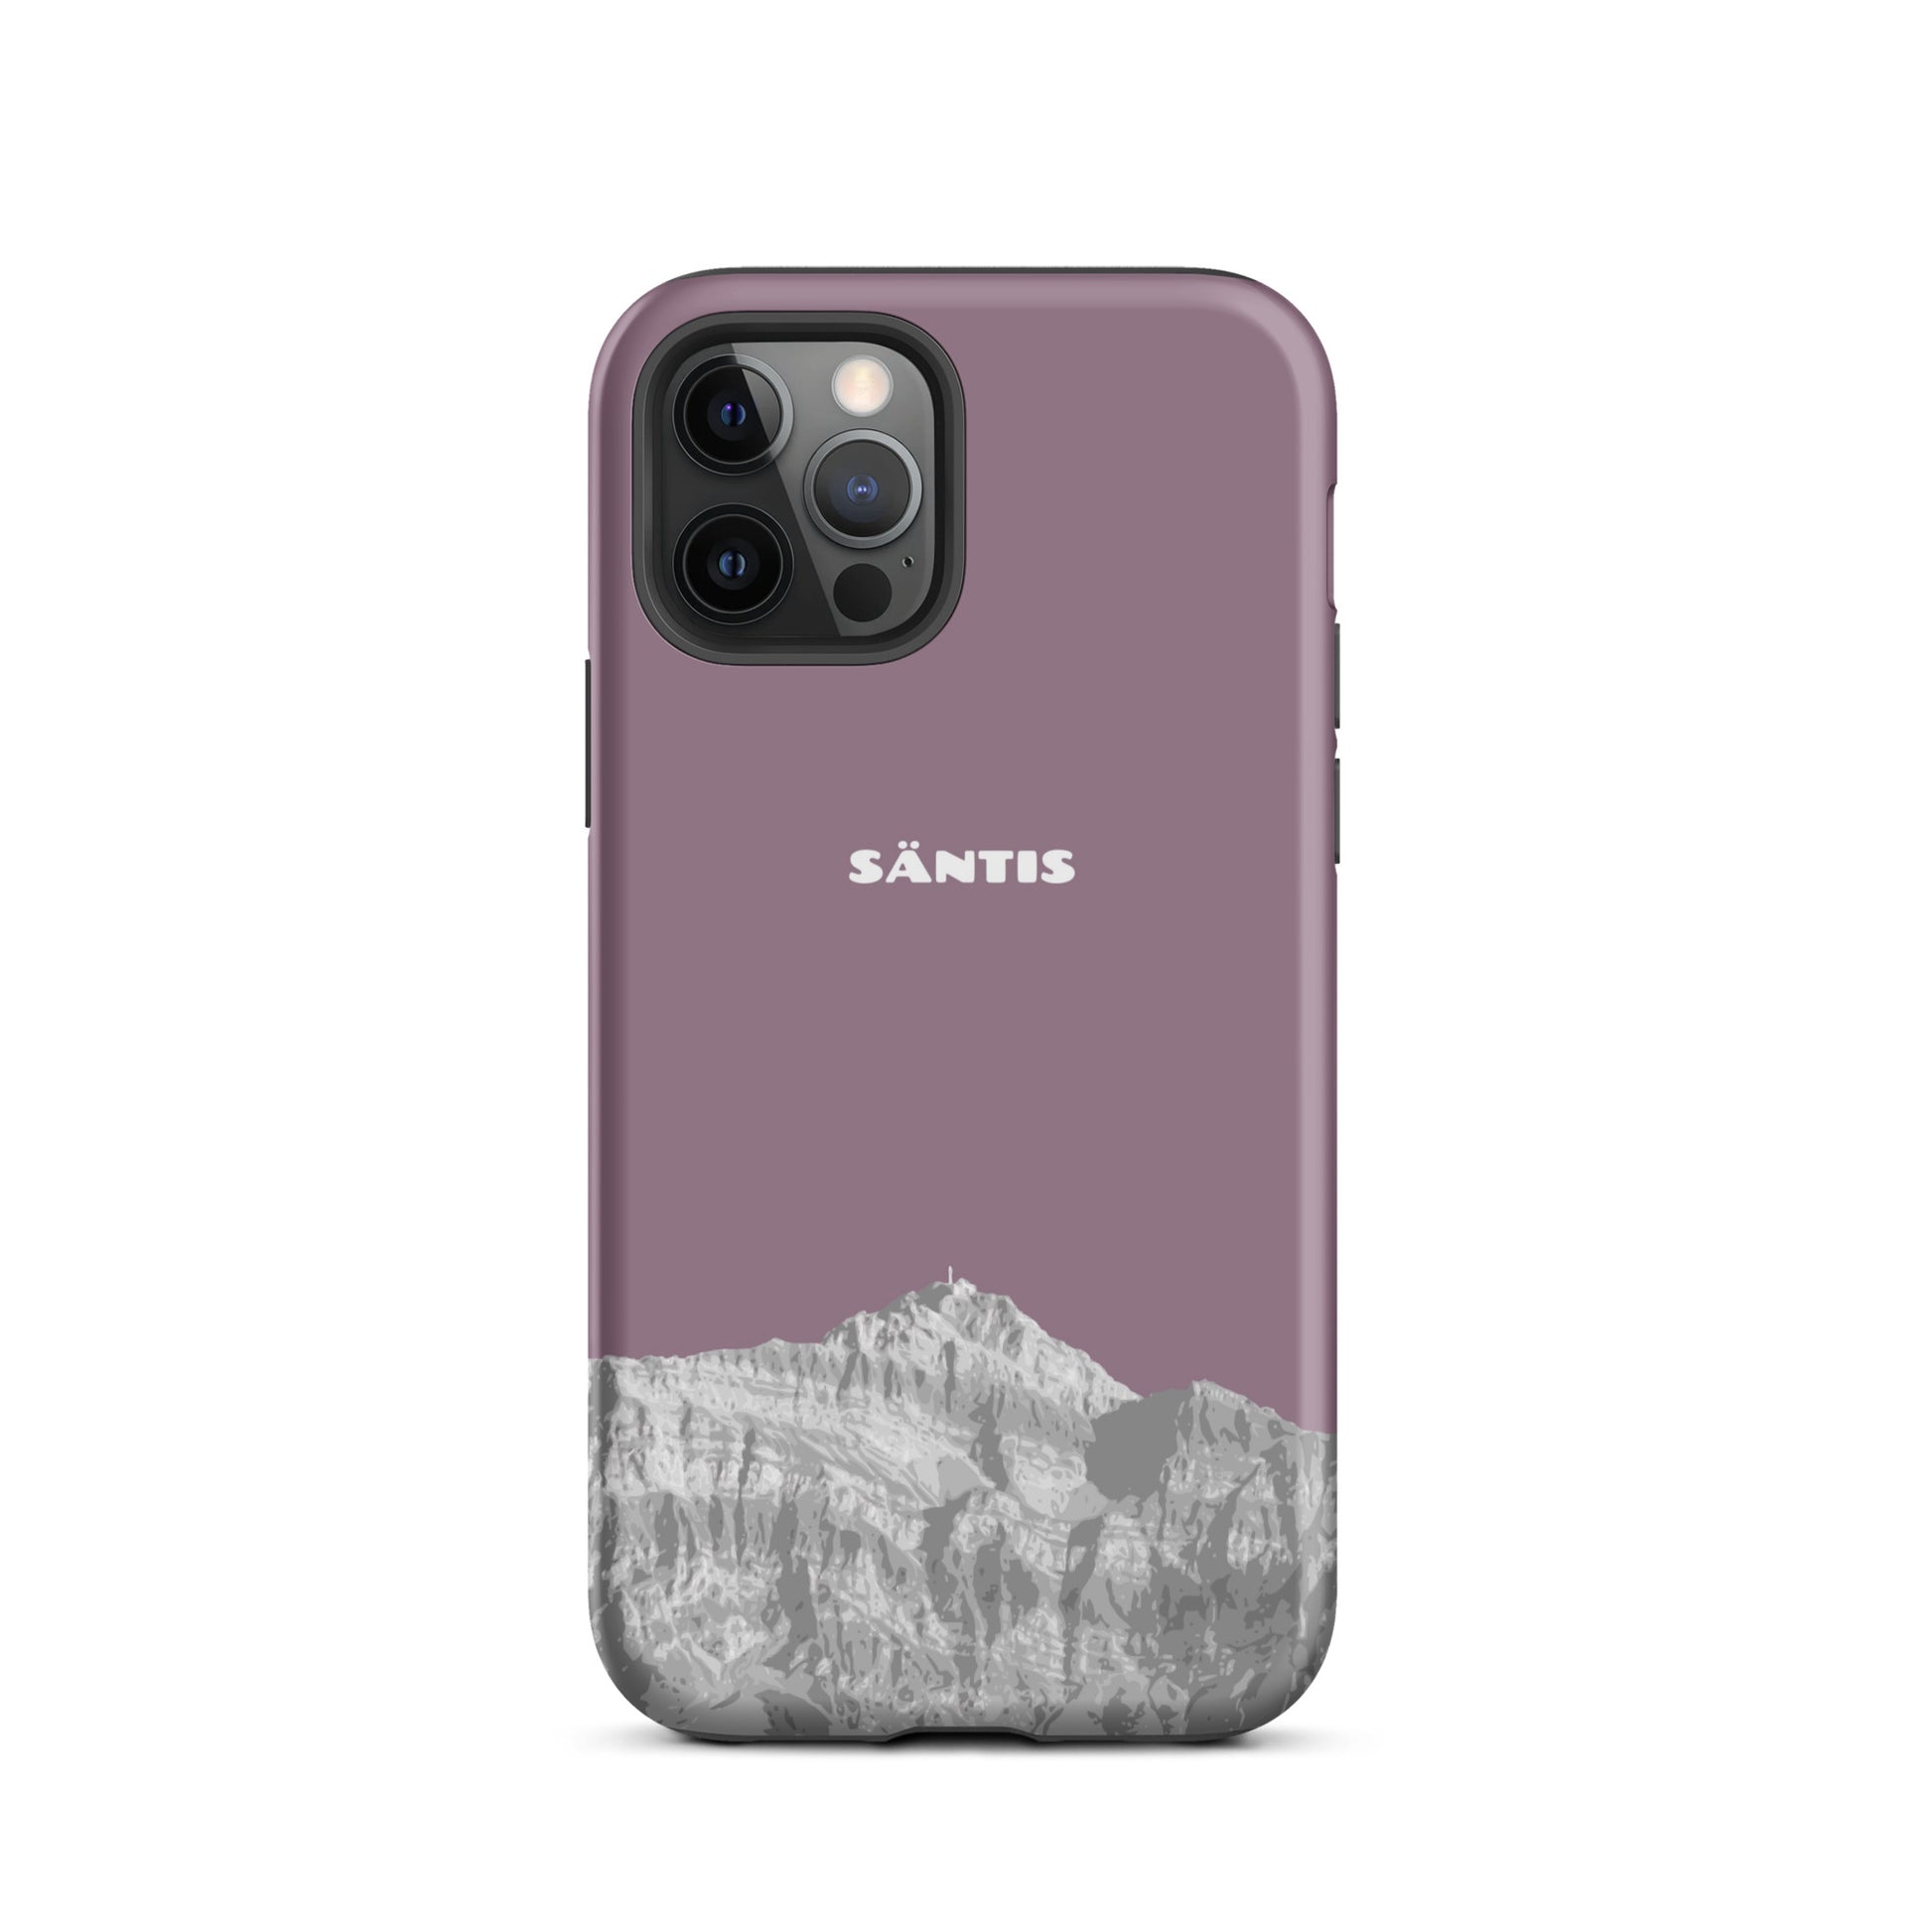 Hülle für das iPhone 12 Pro von Apple in der Farbe Pastellviolett, dass den Säntis im Alpstein zeigt.